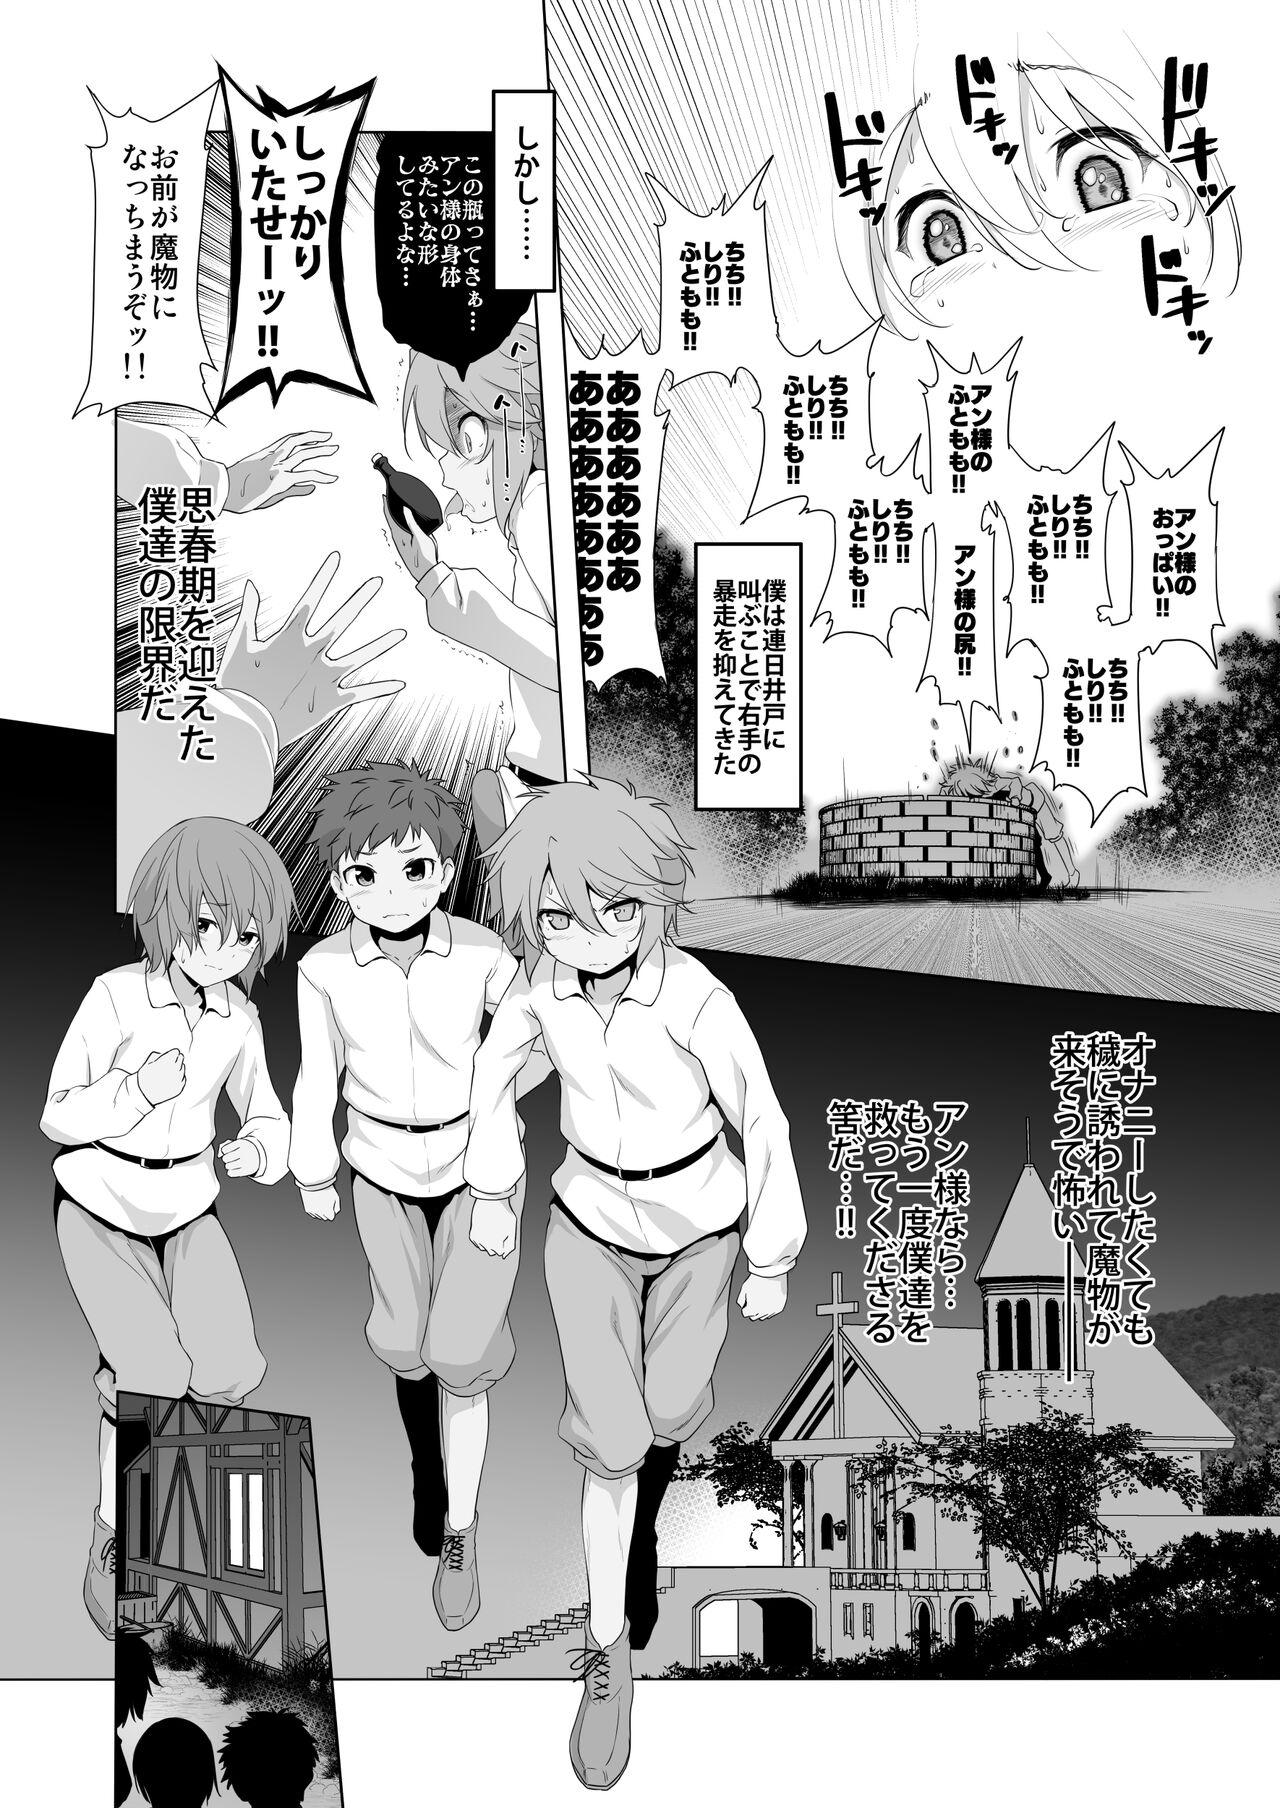 Pervert Makoto ni zannen desu ga bōken no sho7 wa kiete shimaimashita. - Original Hogtied - Page 8